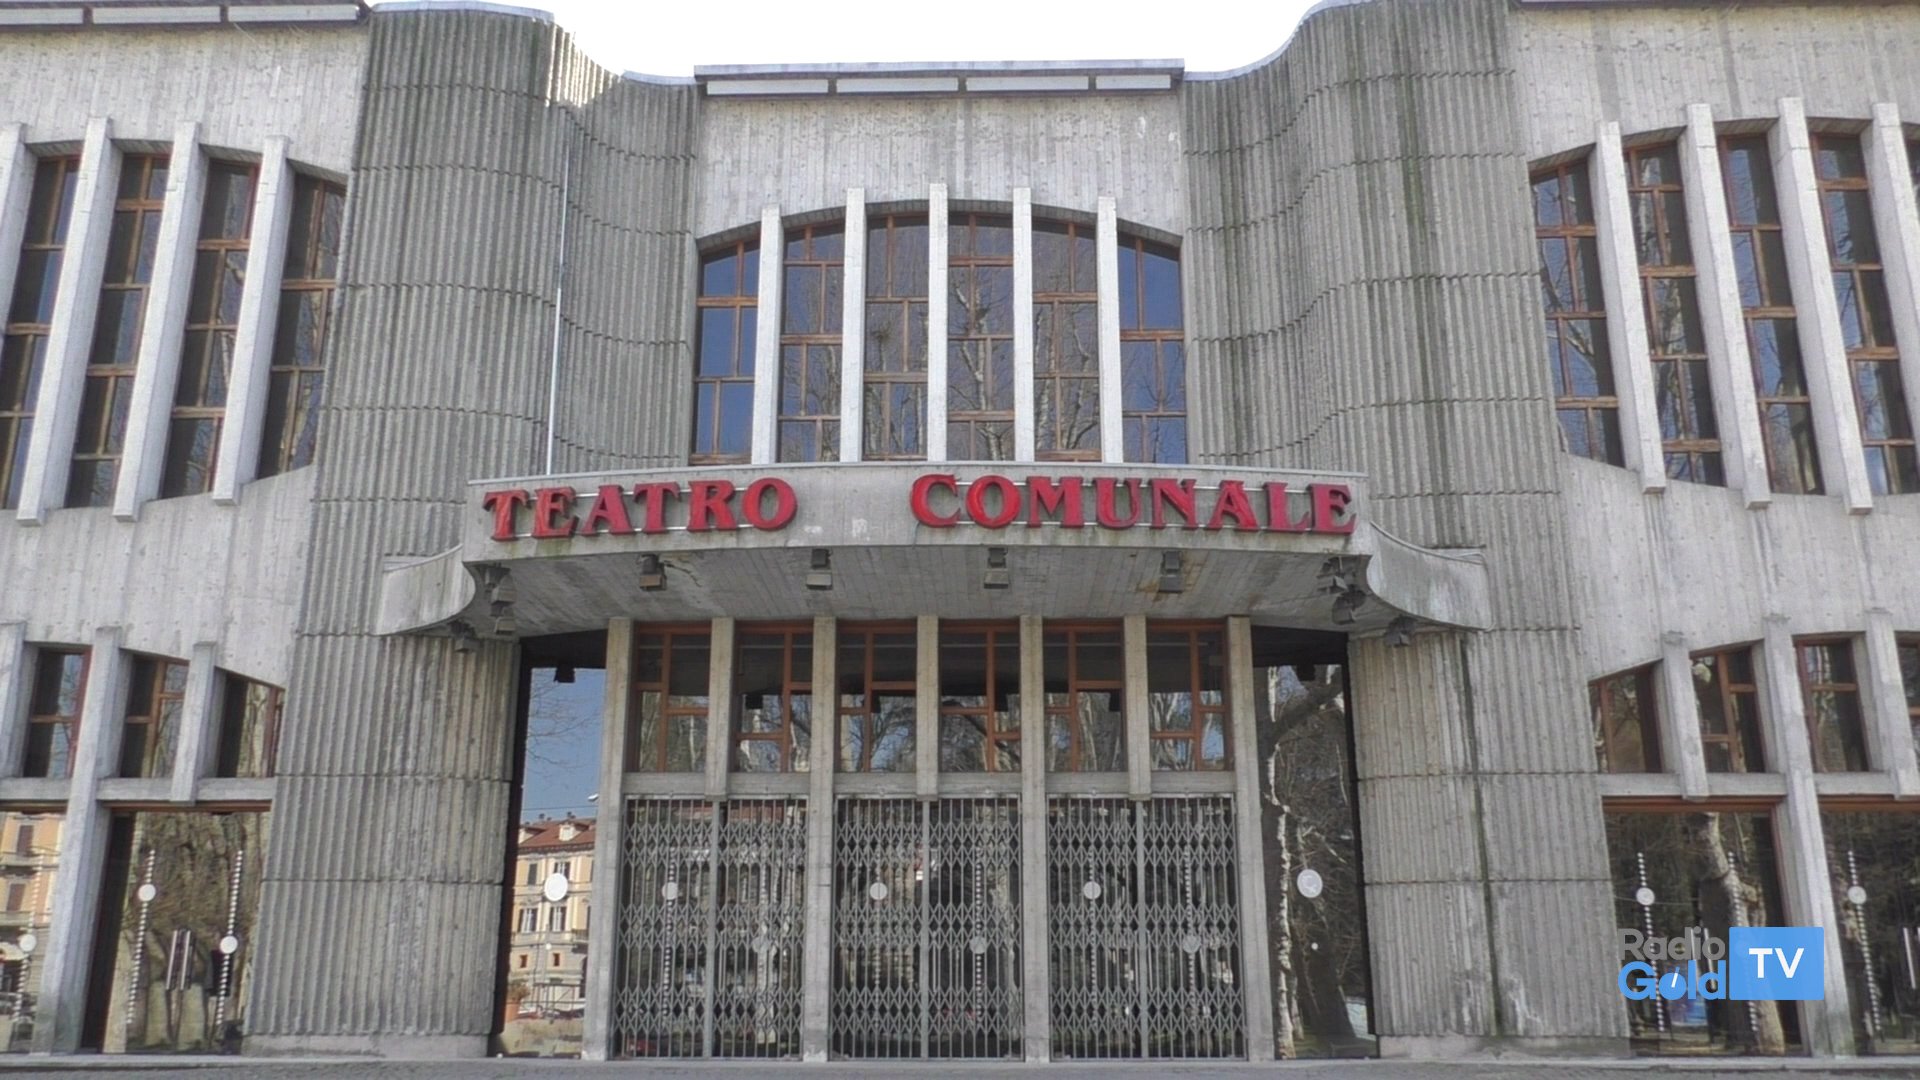 Lettera d’amore al Teatro Comunale di Alessandria: “Mi manchi, vorrei che rinascessi domani”